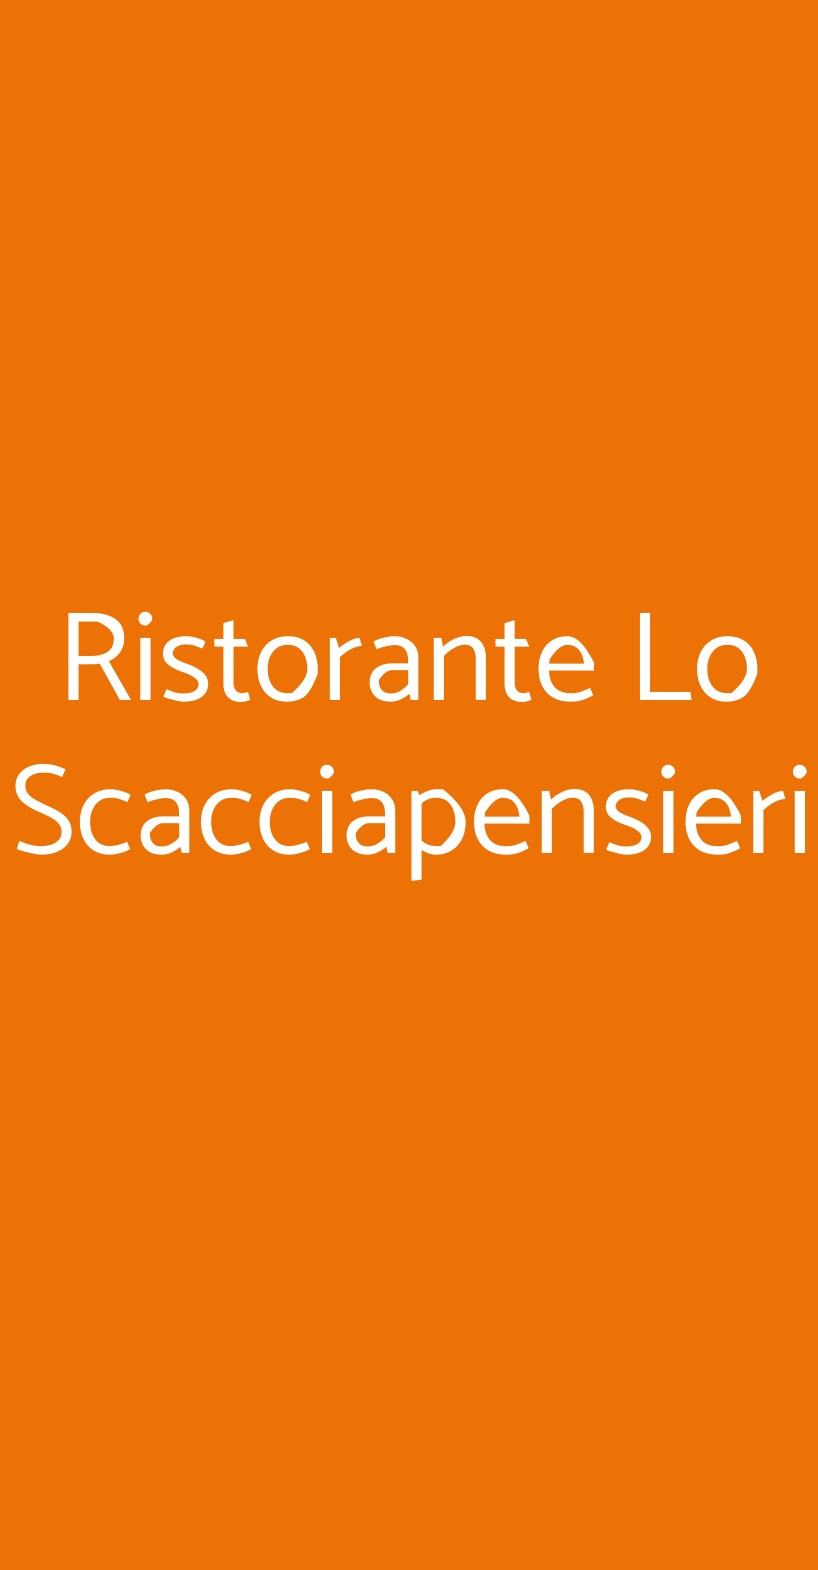 Ristorante Lo Scacciapensieri Monteroni di Lecce menù 1 pagina